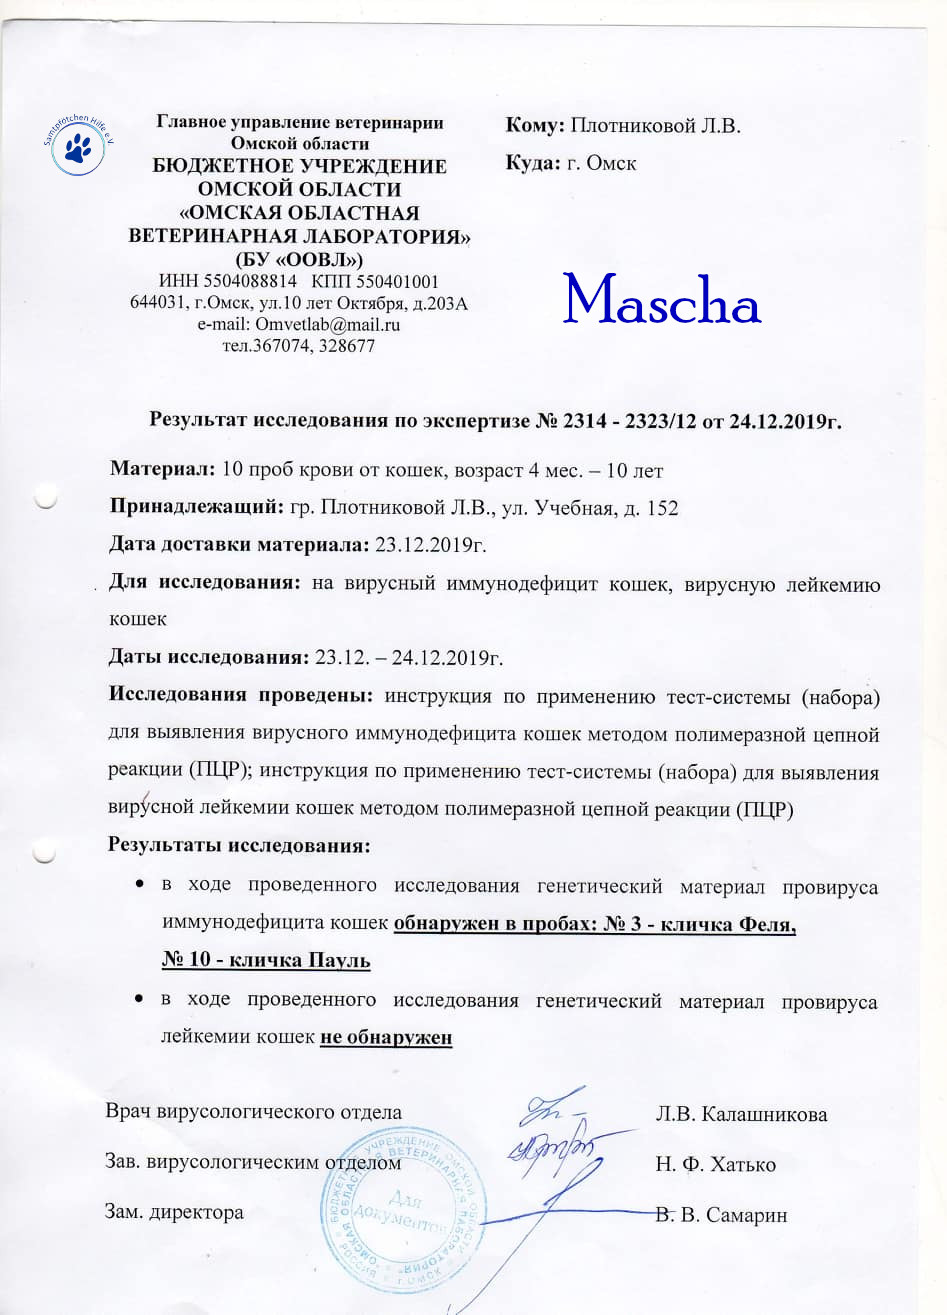 Lyudmila/Katzen/Mascha_II/Mascha_II_12mN.jpg